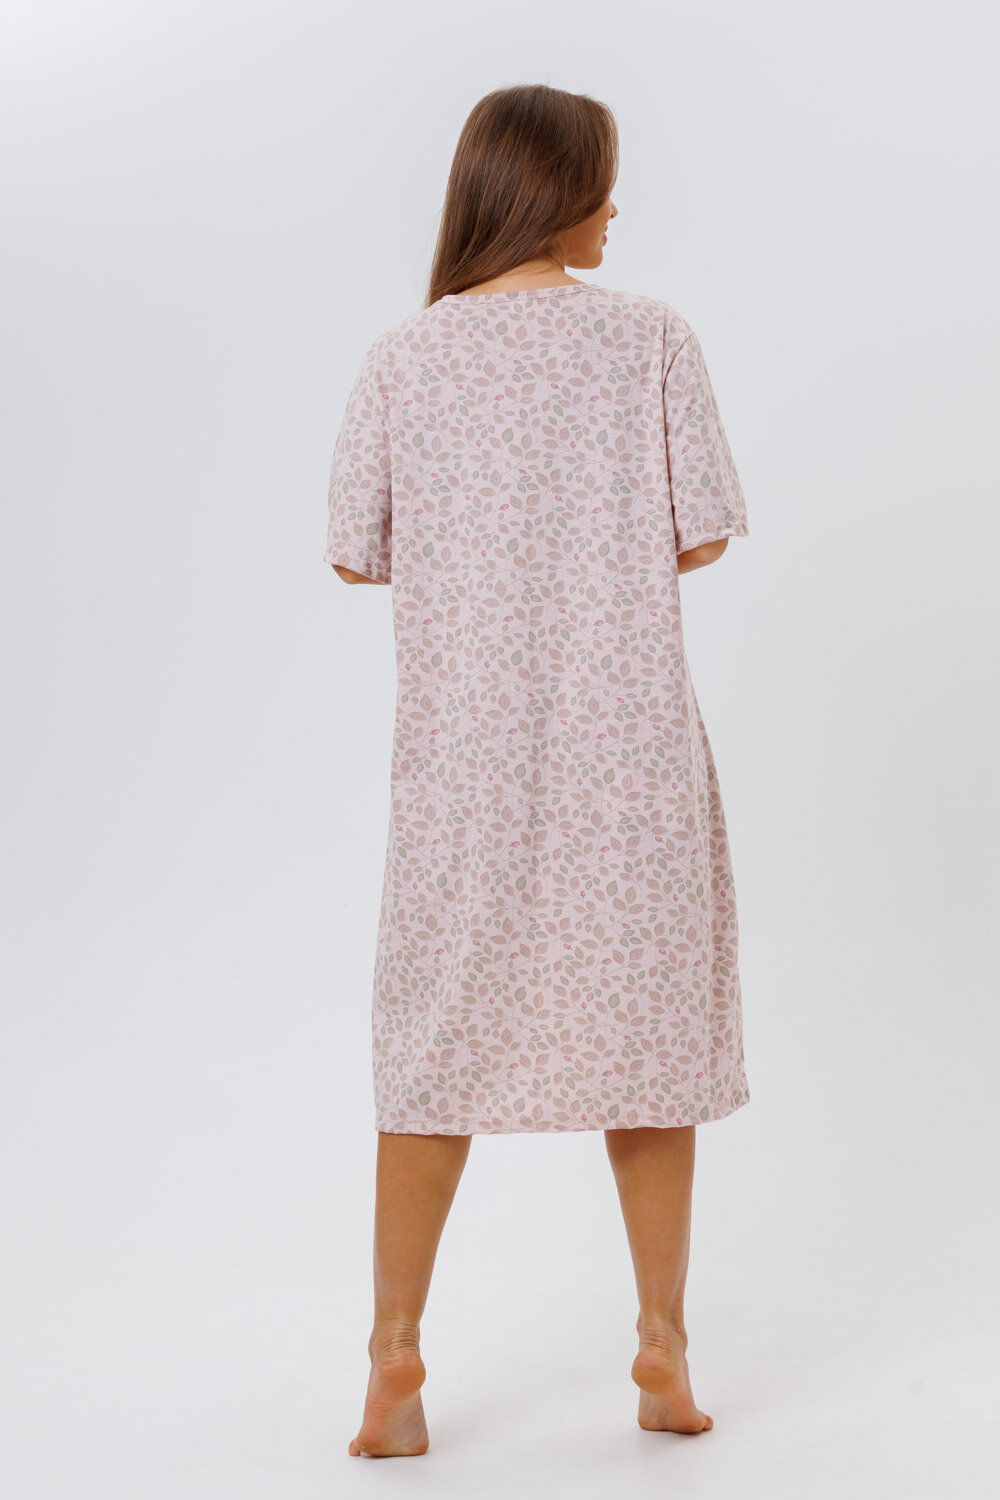 Сорочка Modellini, размер 58, розовый, бежевый - фотография № 9